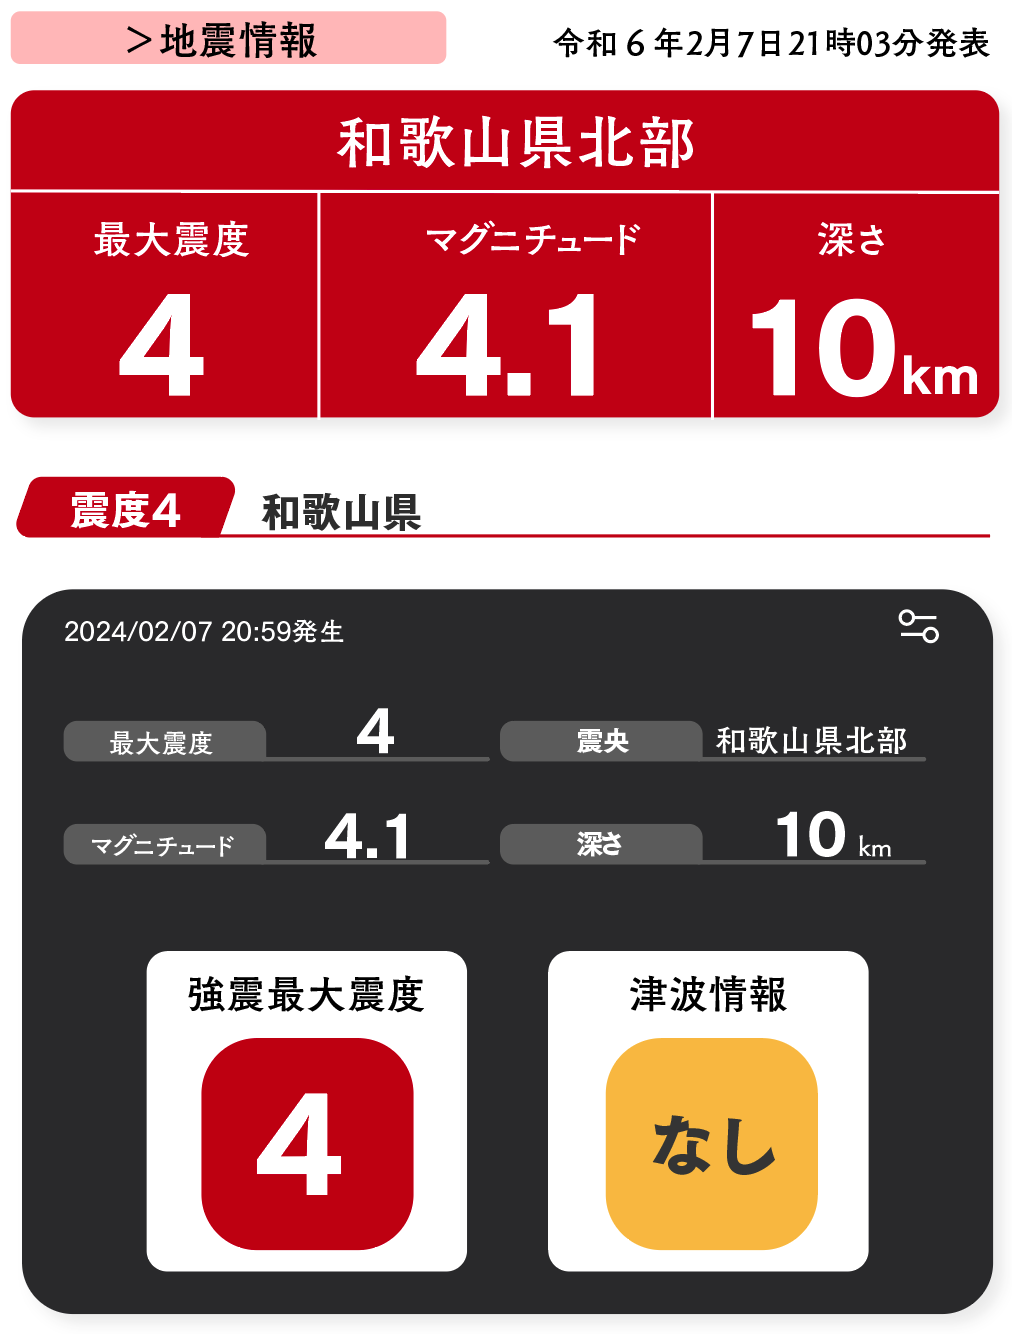 最大震度４を伝える地震ソフト。和歌山県北部で2月7日20時59発生の地震。